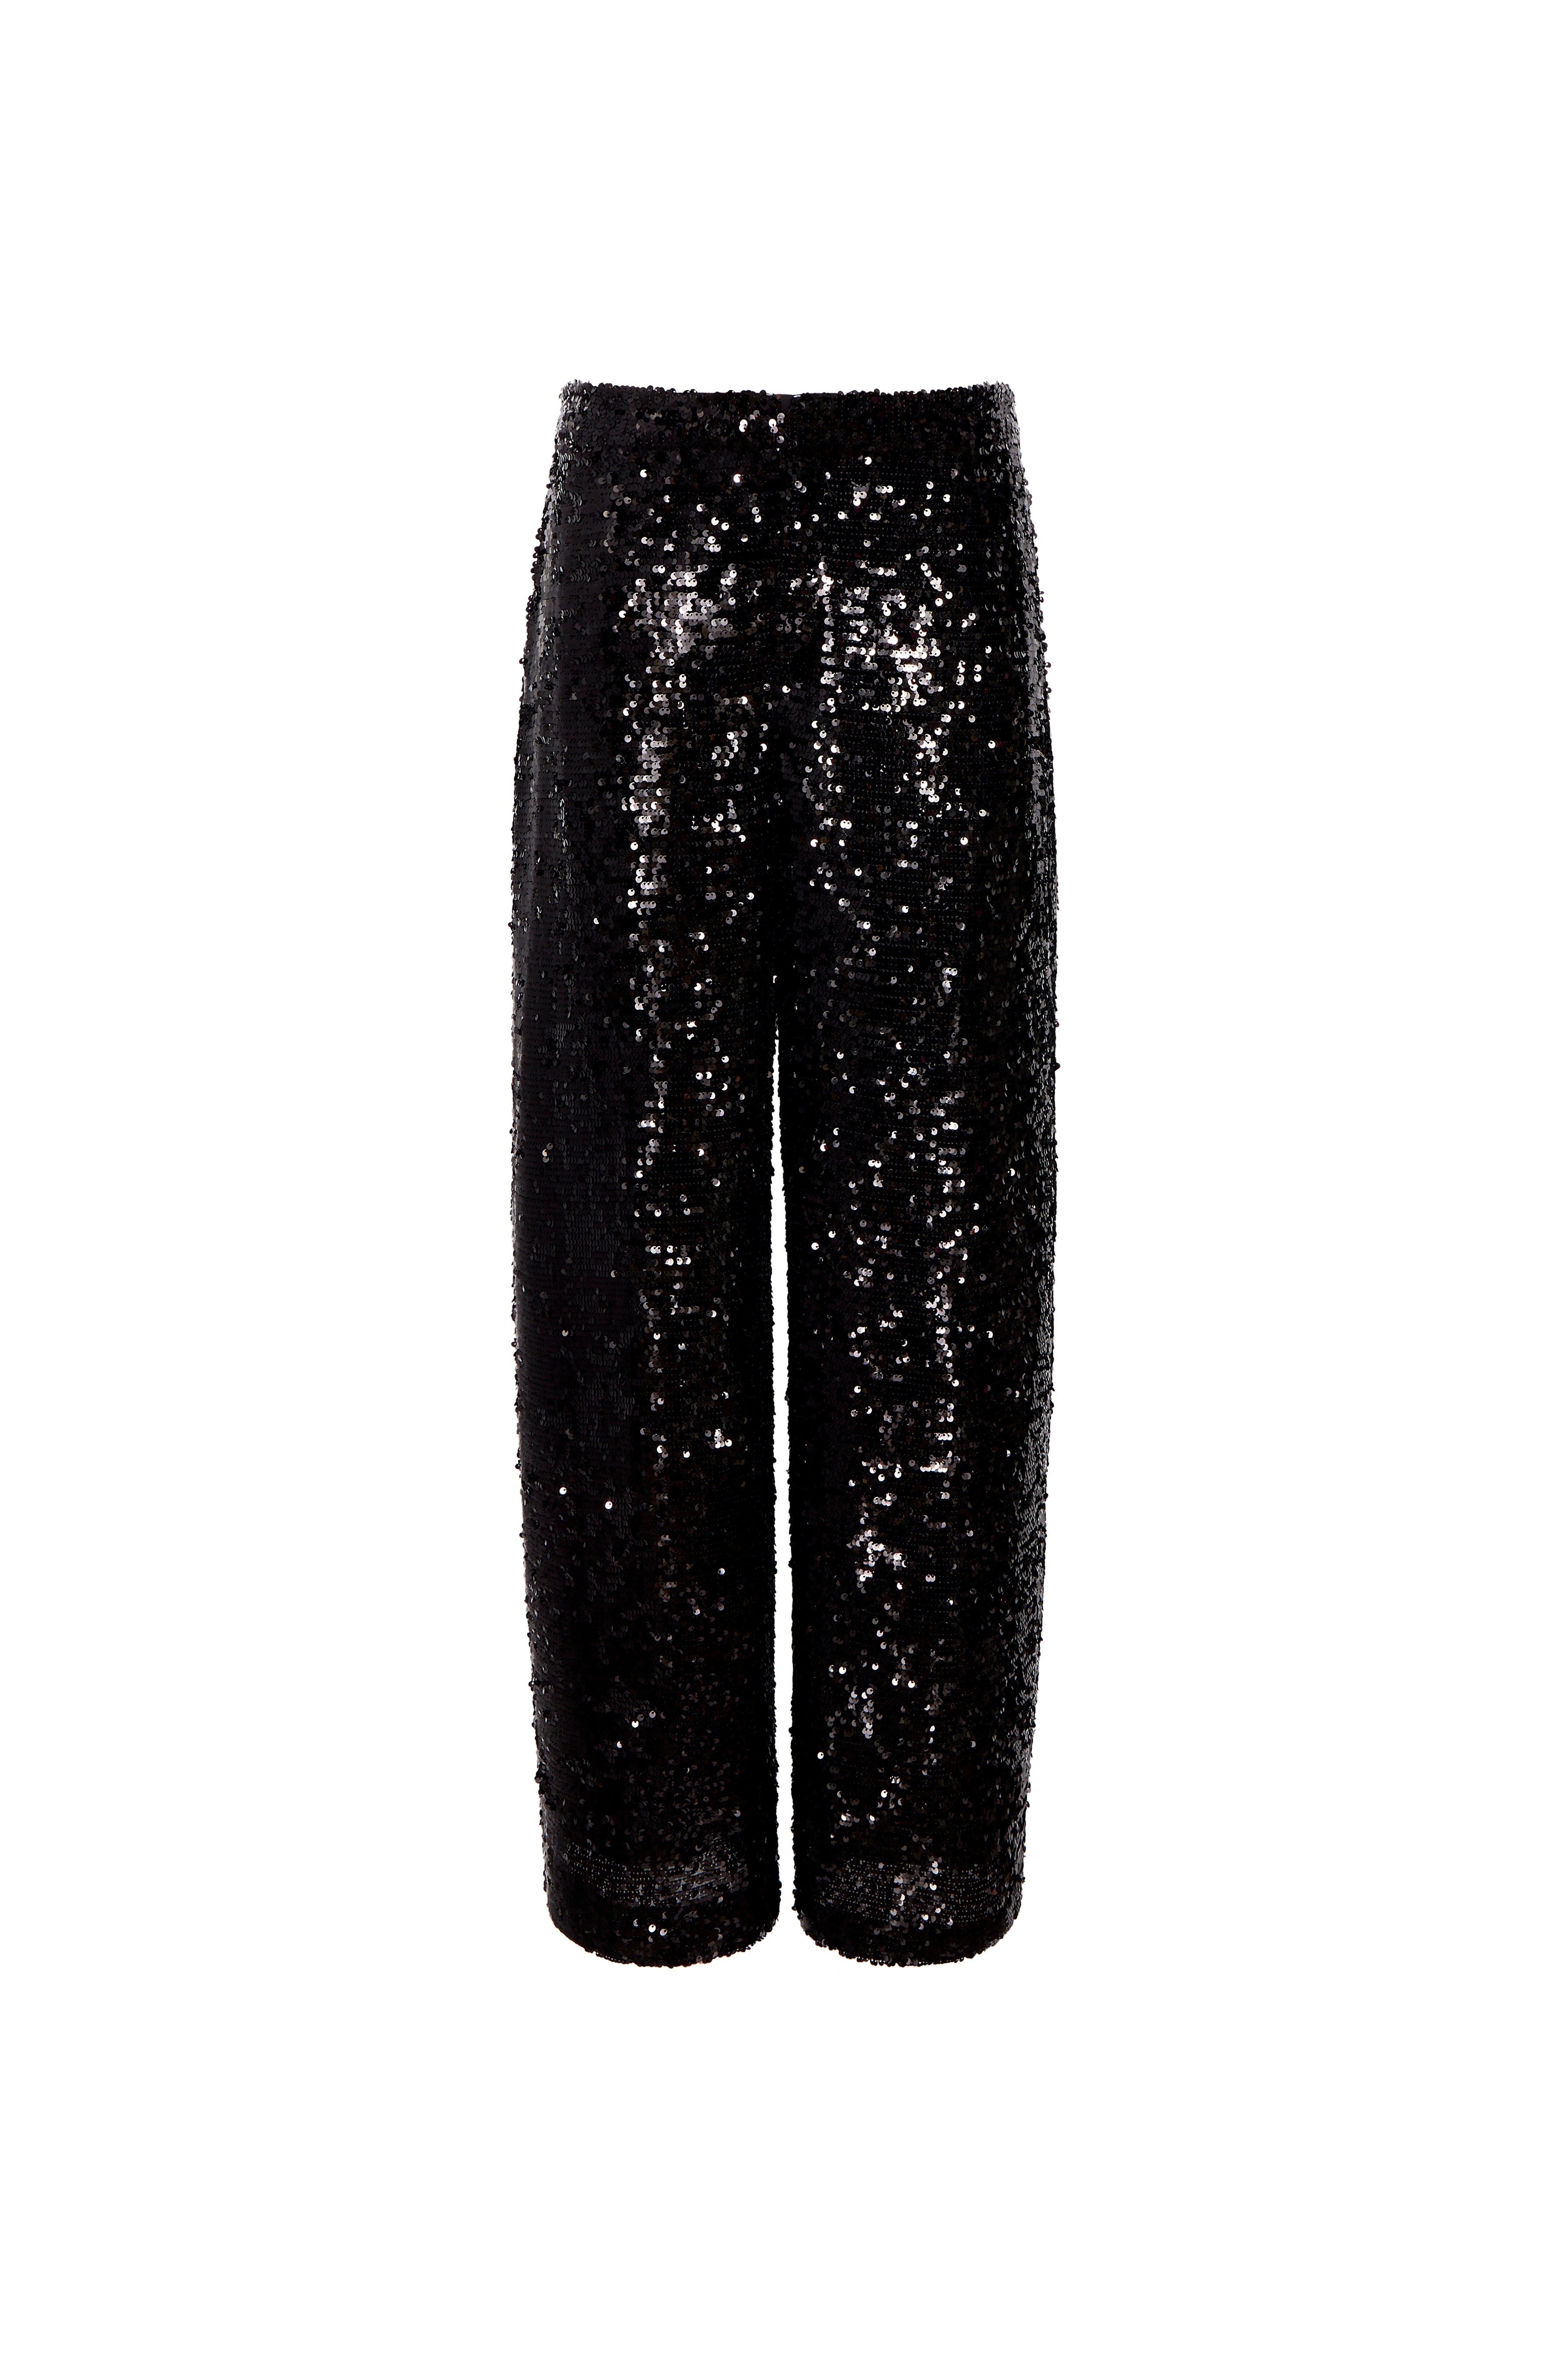 Elegant and Sparkling Black Sequin Flare Pants